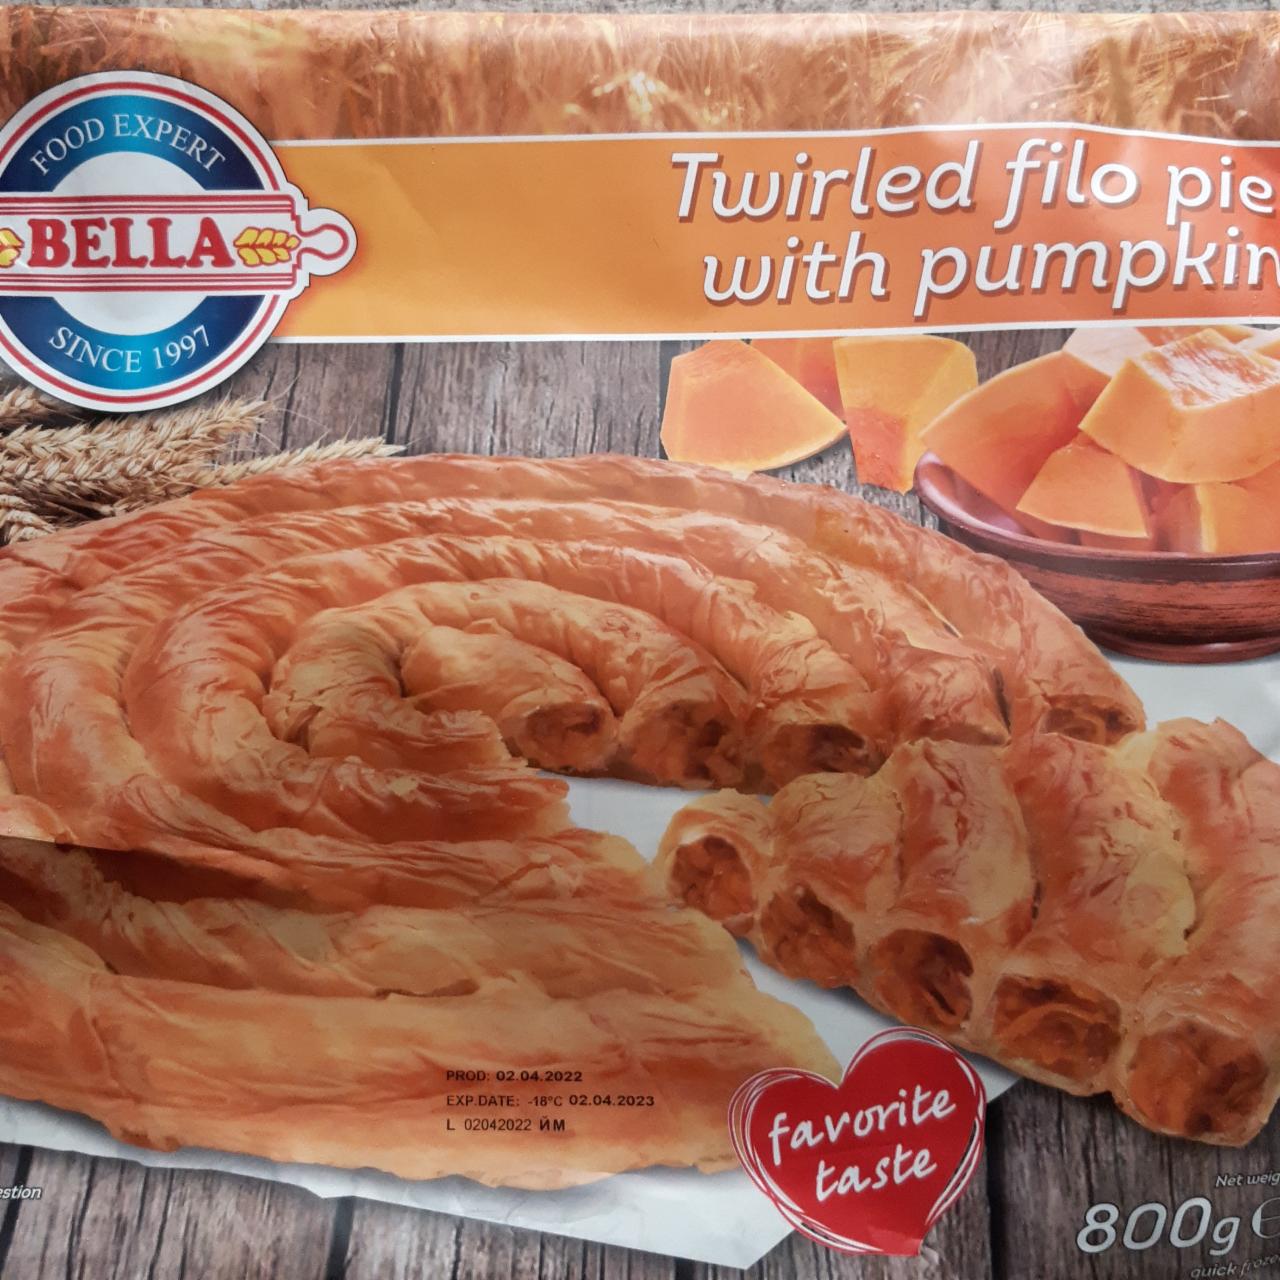 Fotografie - Twirled filo pie with pumpkin Bella